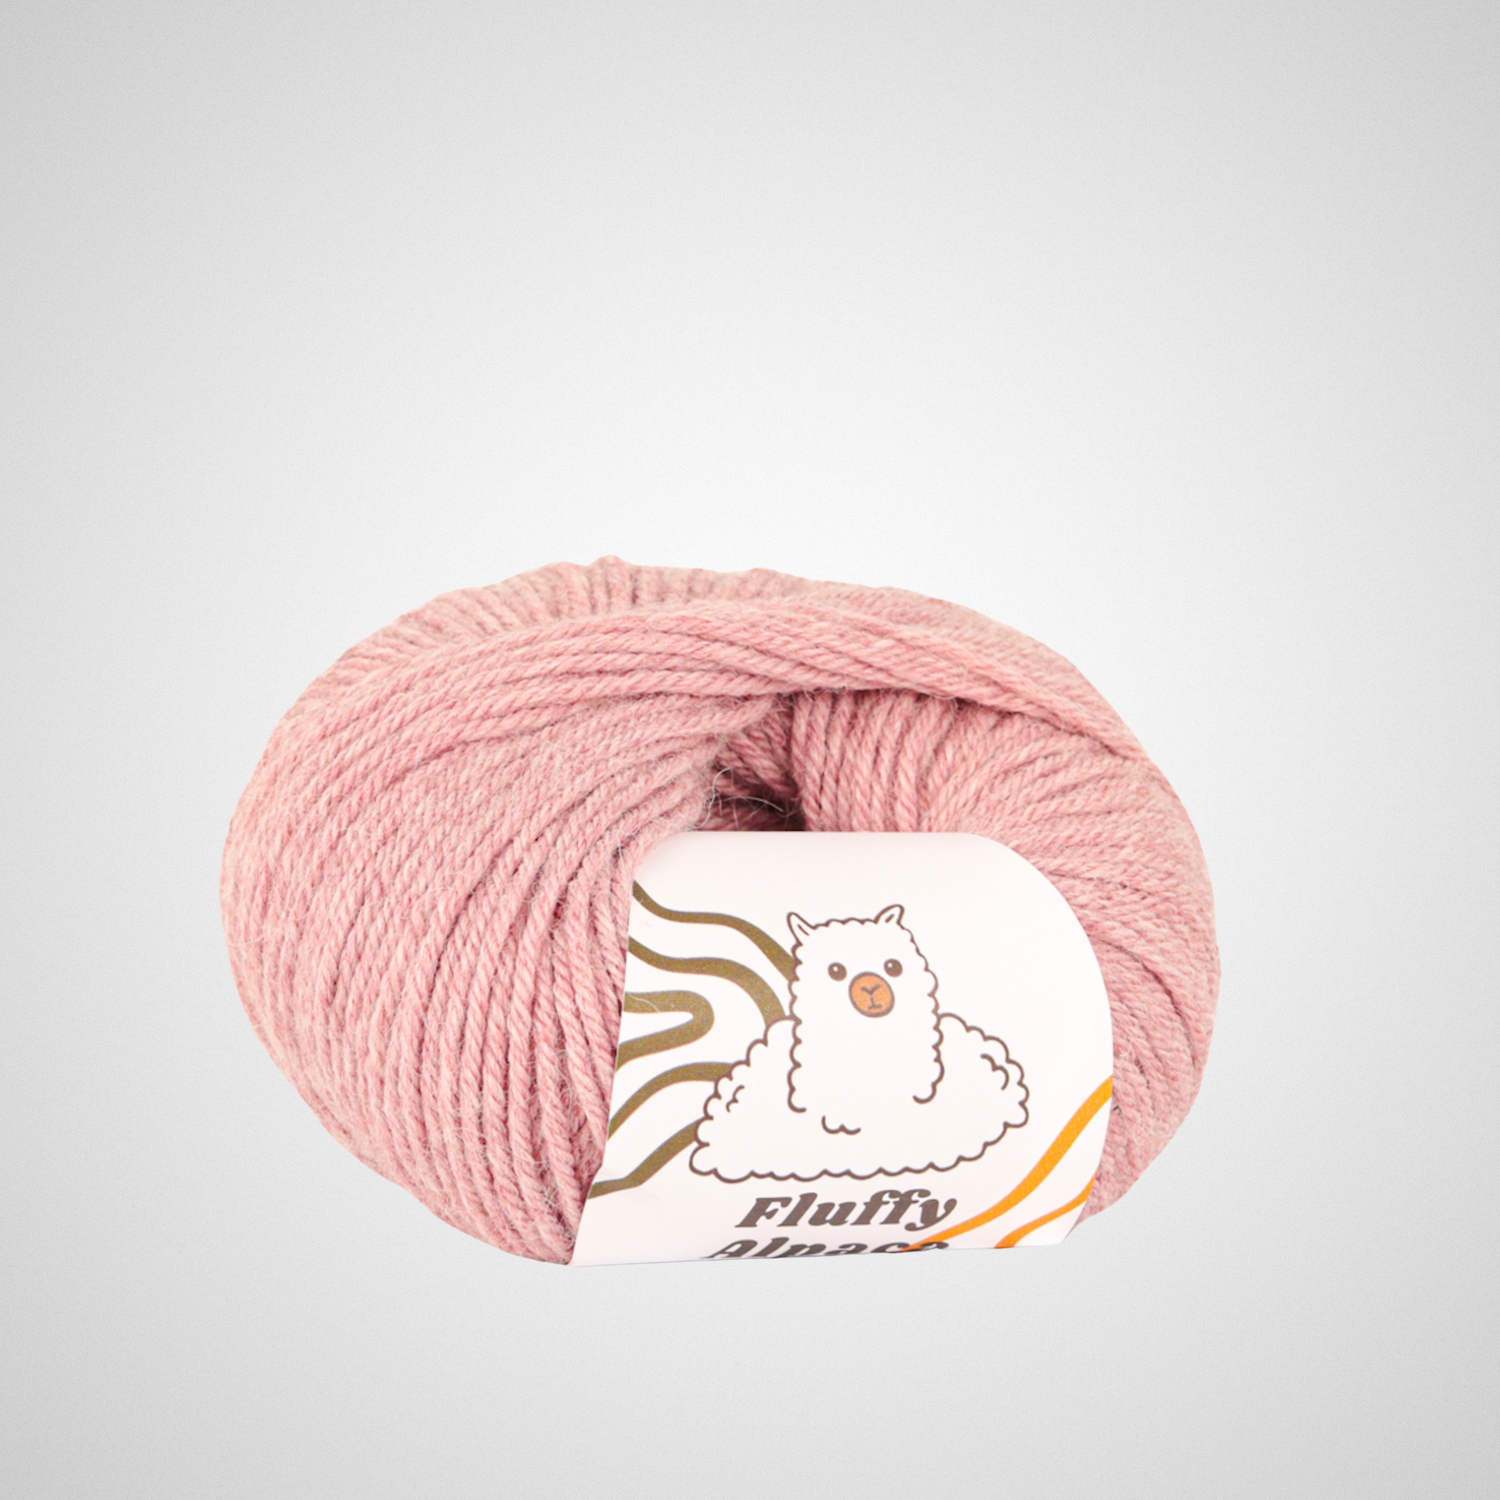 Fluffy Alpaca - Knitting yarn - 100% alpaca wool - All colors